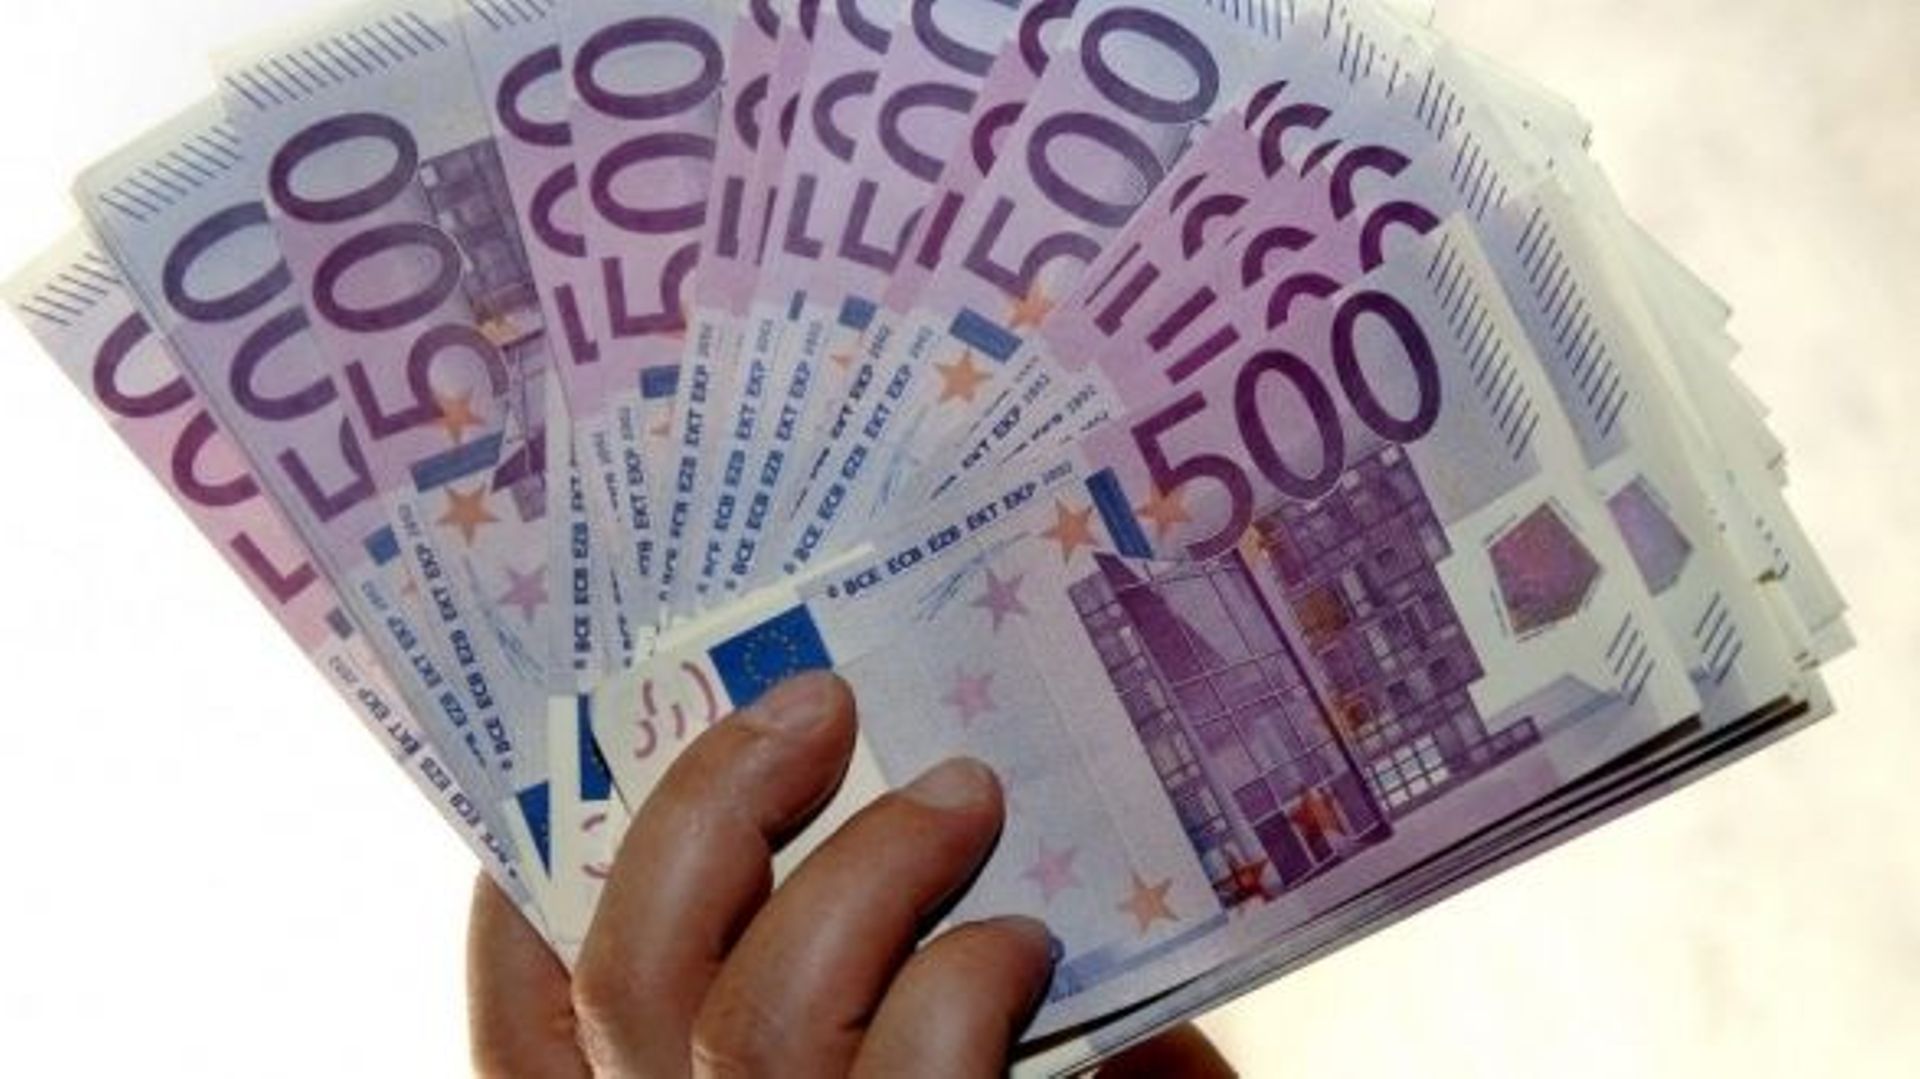 Plus de faux billets d'euros saisis en Belgique 